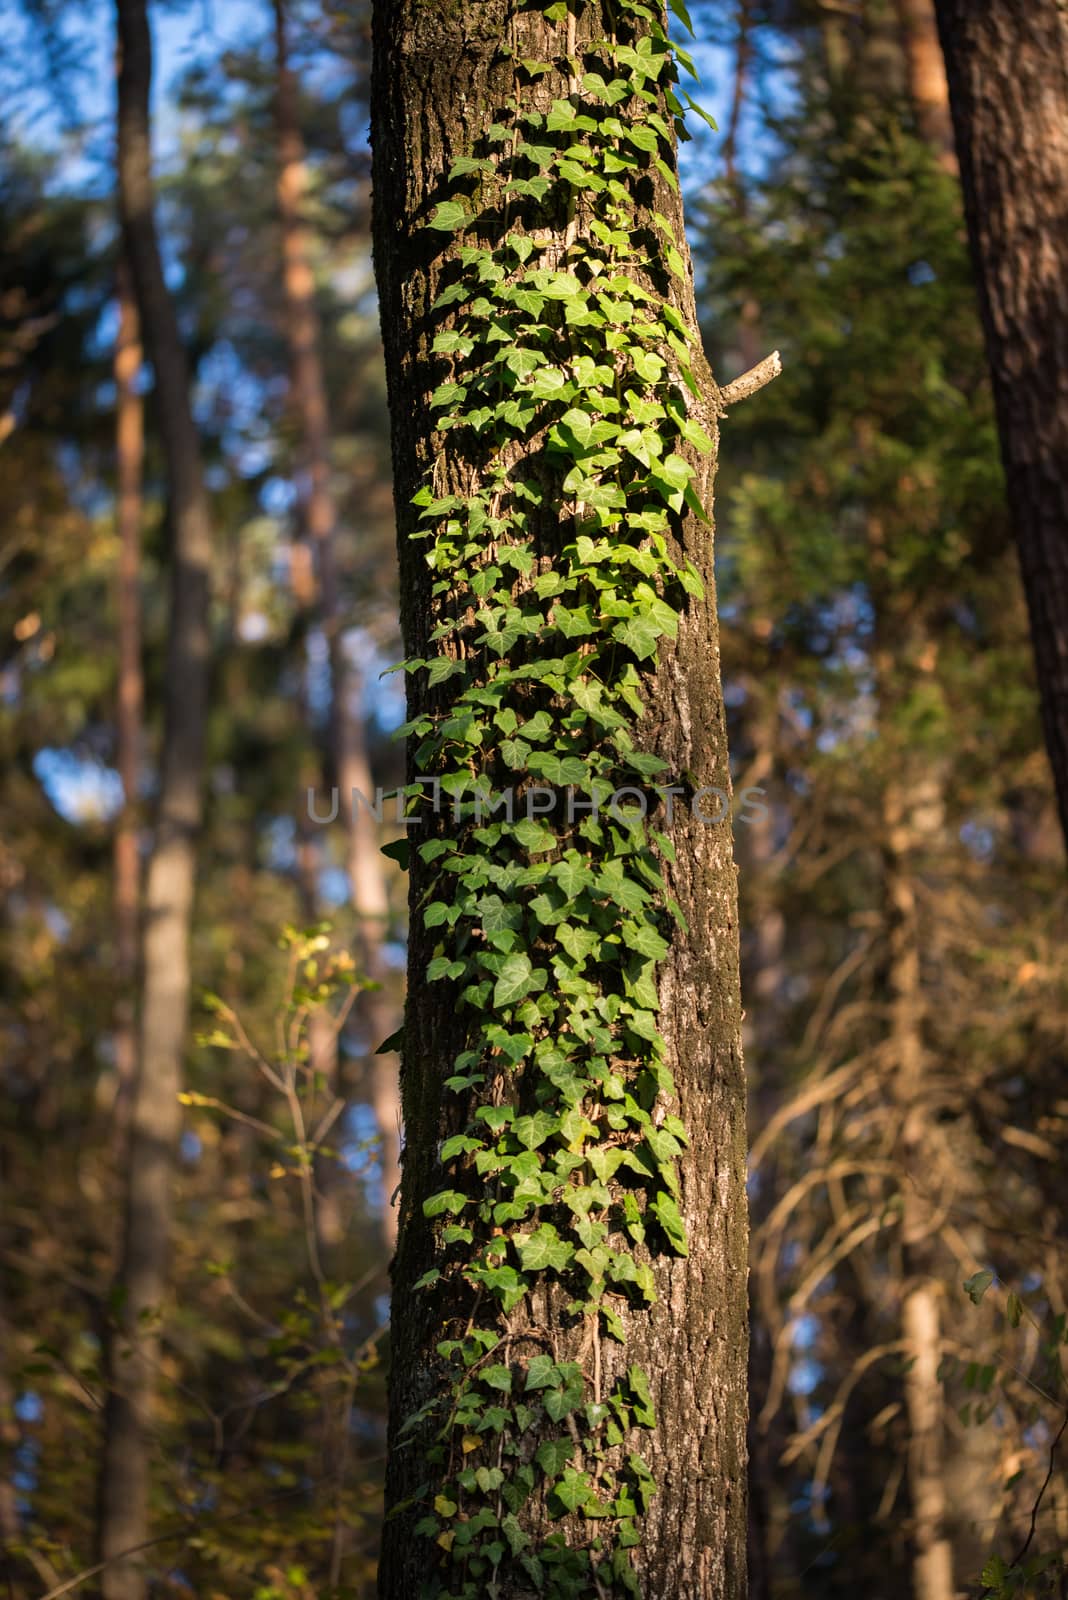 Green ivy leaves climbing on an oak tree in dark woods, ivy lit by sunlight